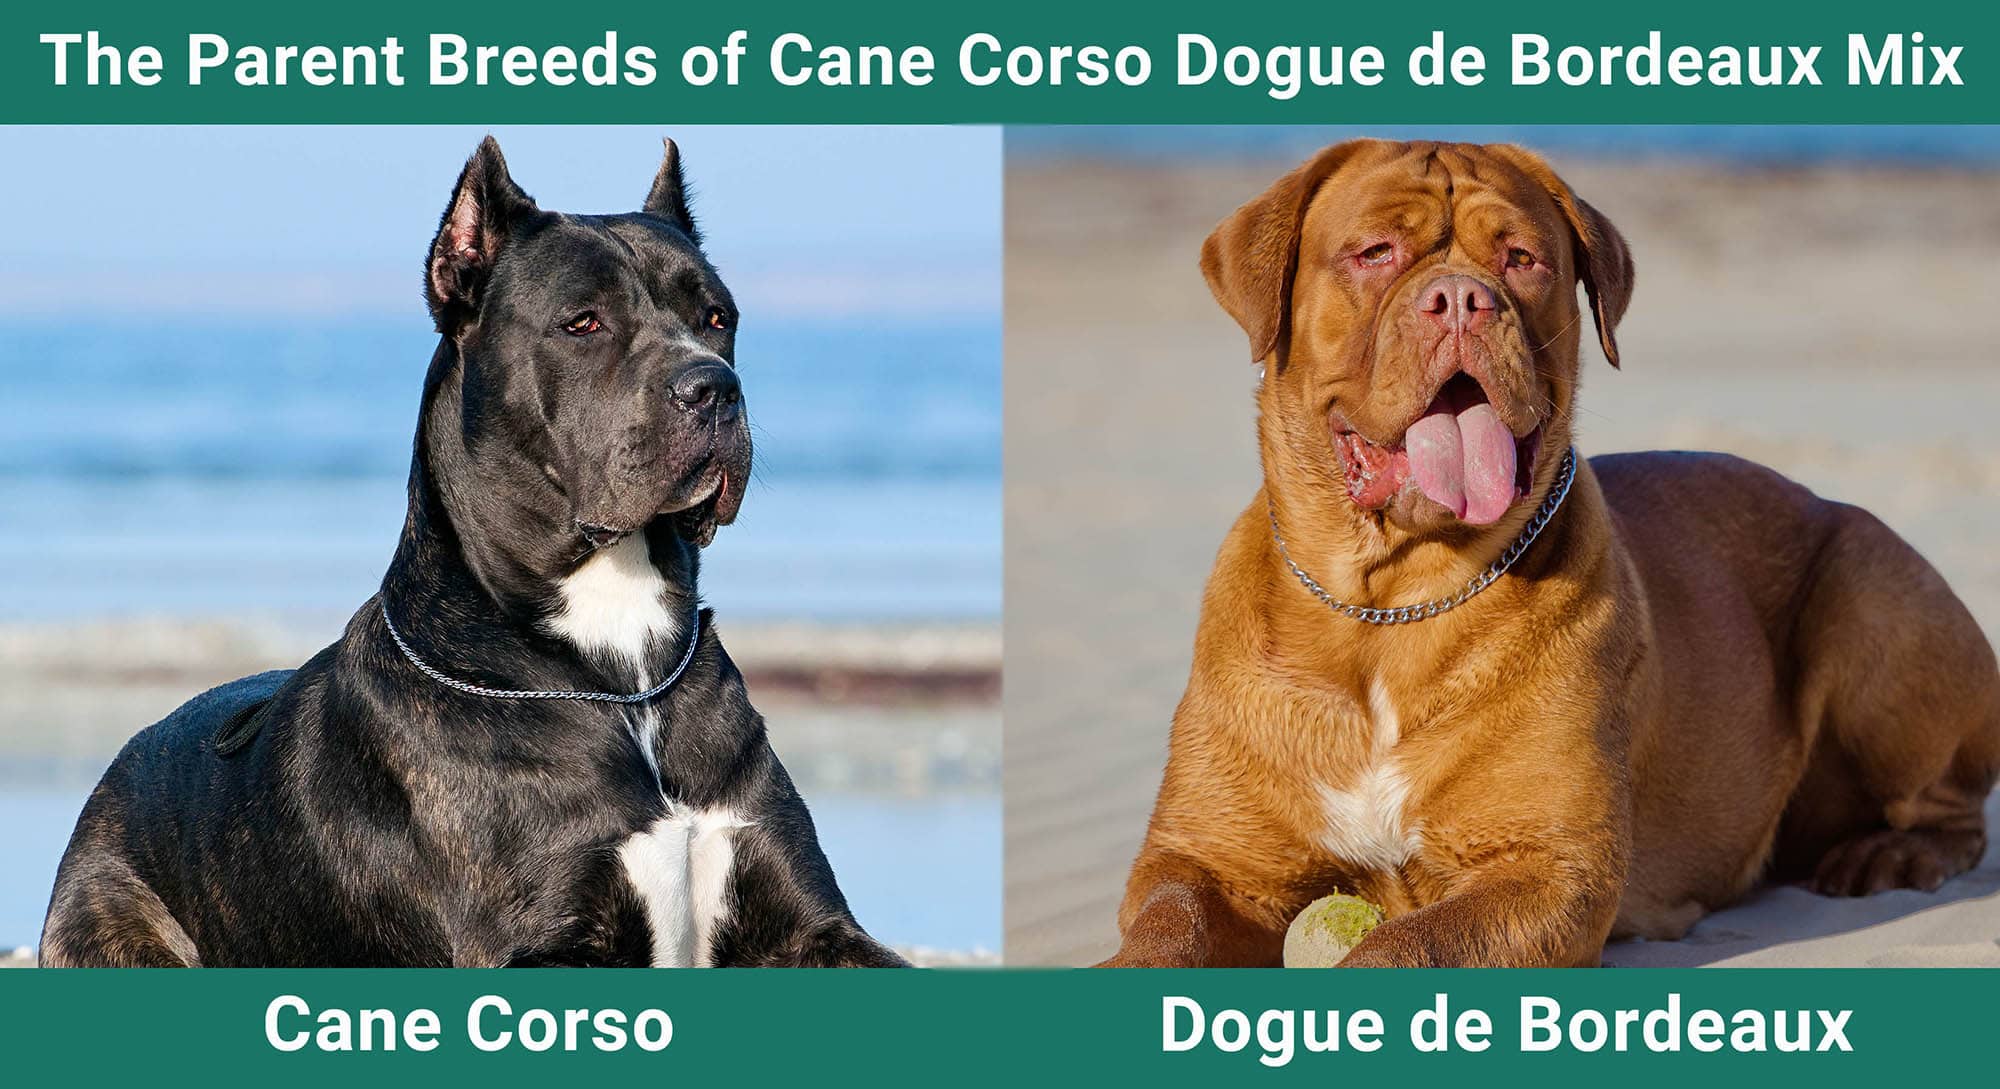 The Parent Breeds of Cane Corso Dogue de Bordeaux Mix